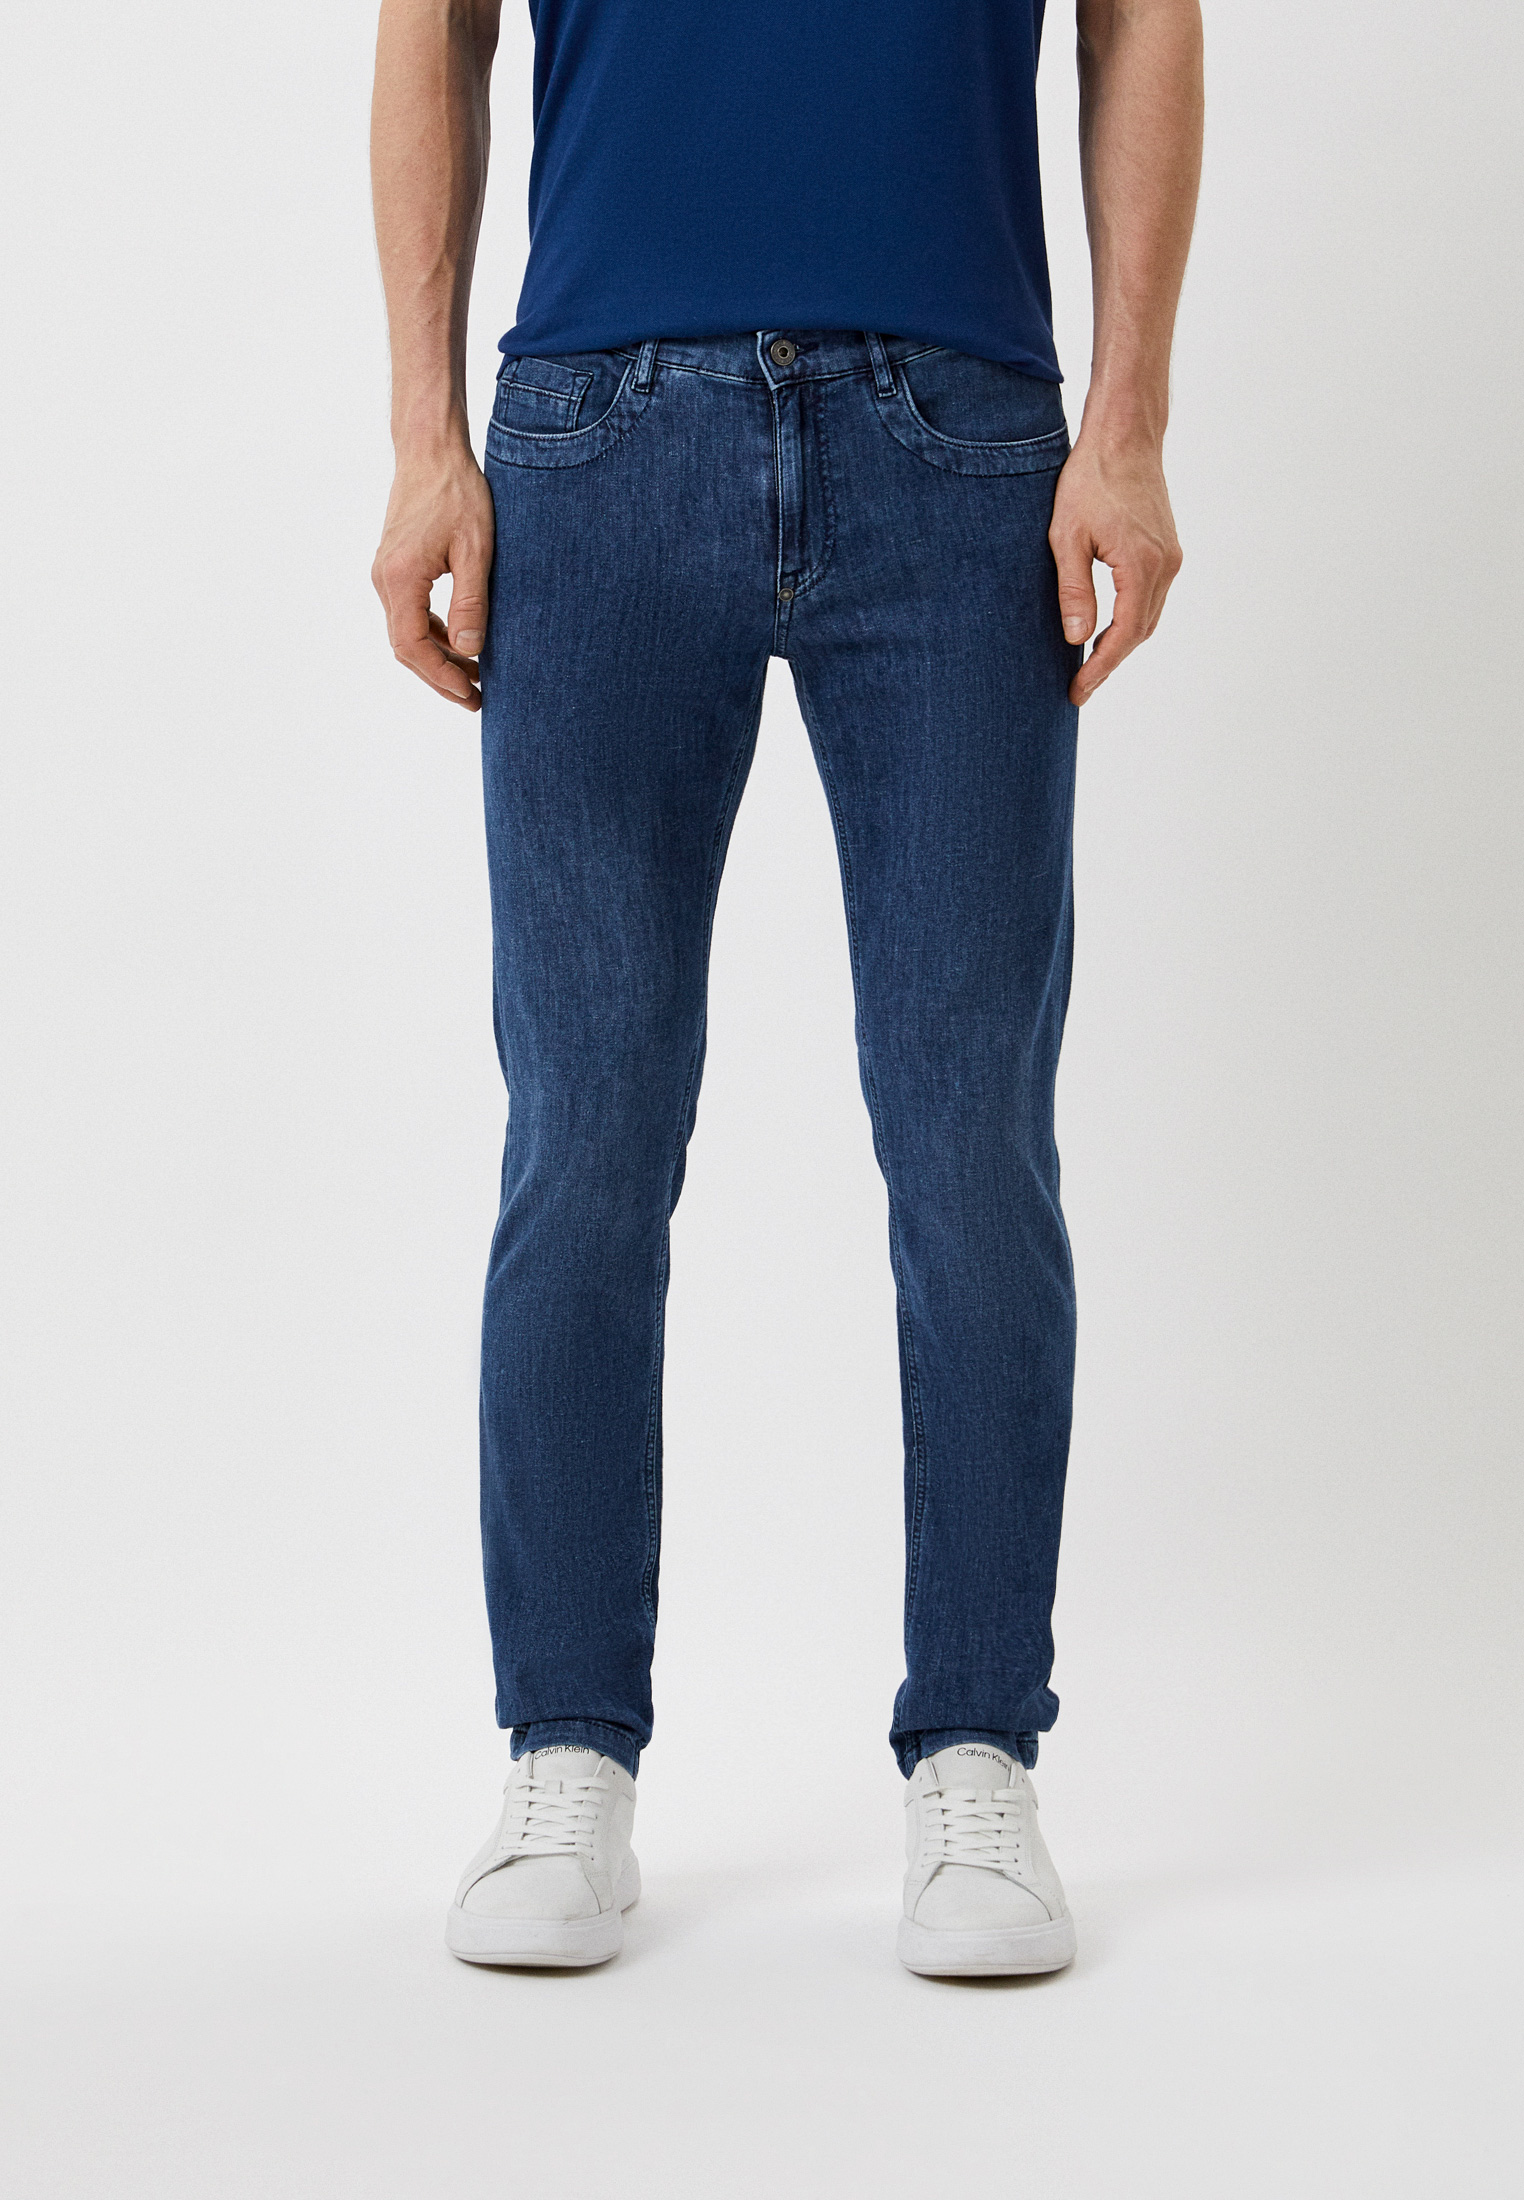 Мужские прямые джинсы Bikkembergs (Биккембергс) C Q 101 88 S 3780: изображение 1